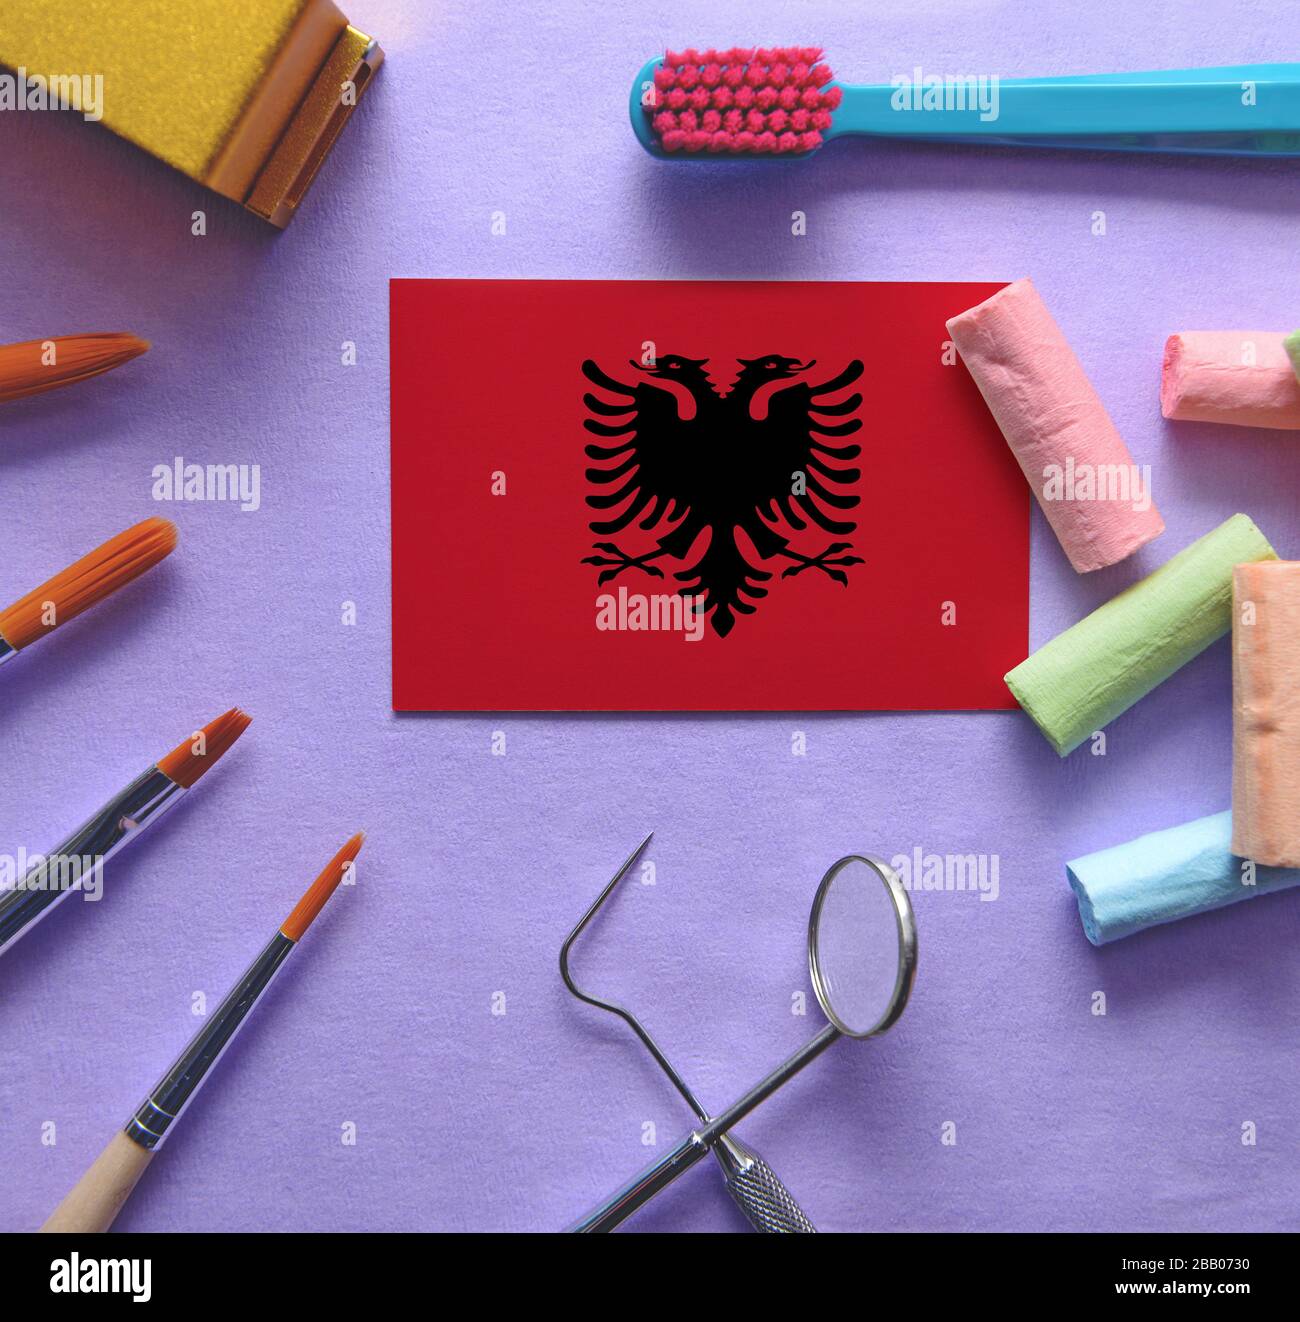 Zahnarztkonzept mit Instrumenten - konzeptionelles Bild des zahnärztlichen Gesundheitssystems Albaniens Stockfoto